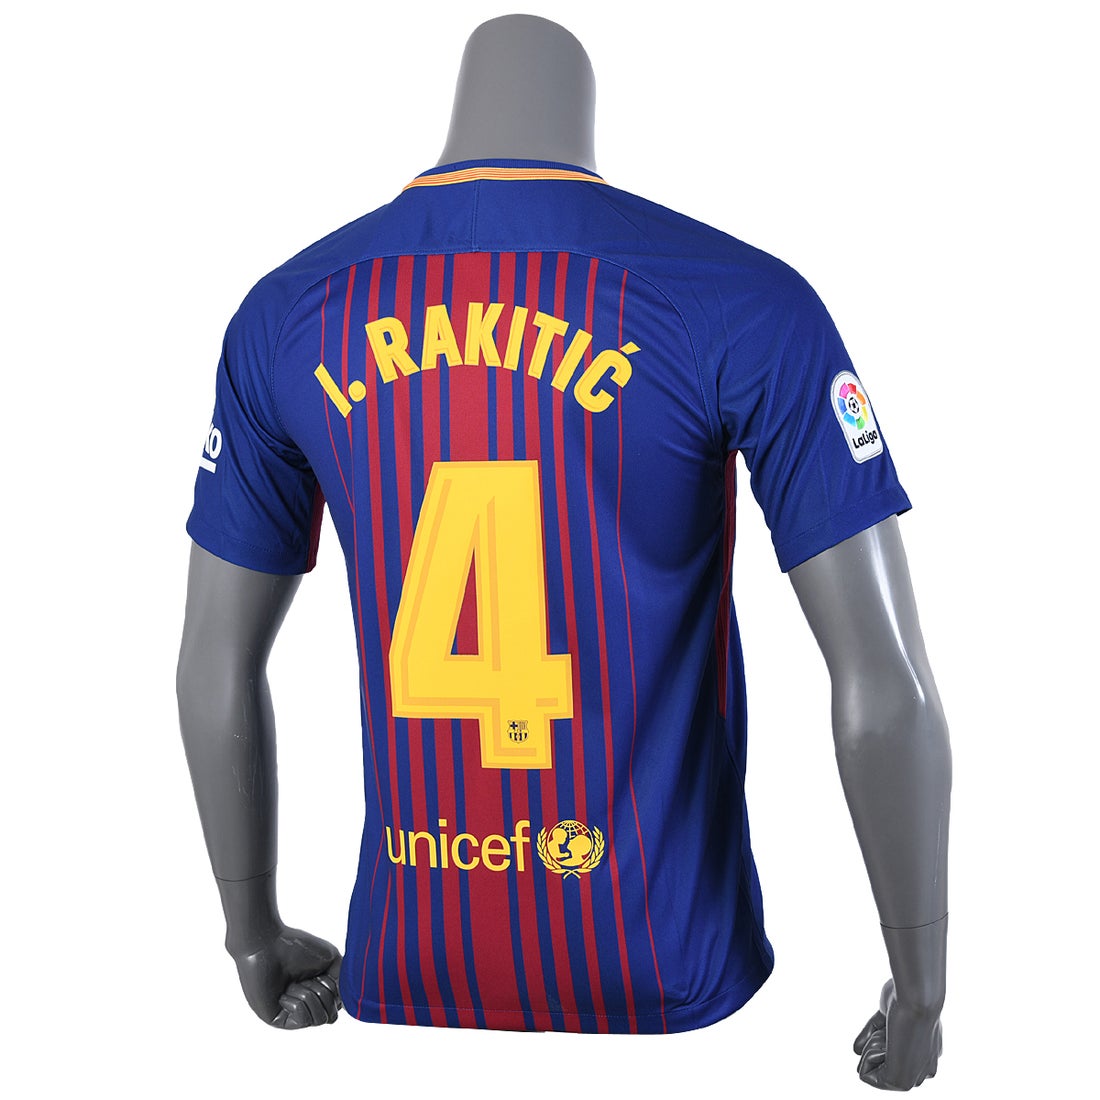 FC Barcelonaイヴァン・ラキティッチ選手 オーセンティックユニフォーム-